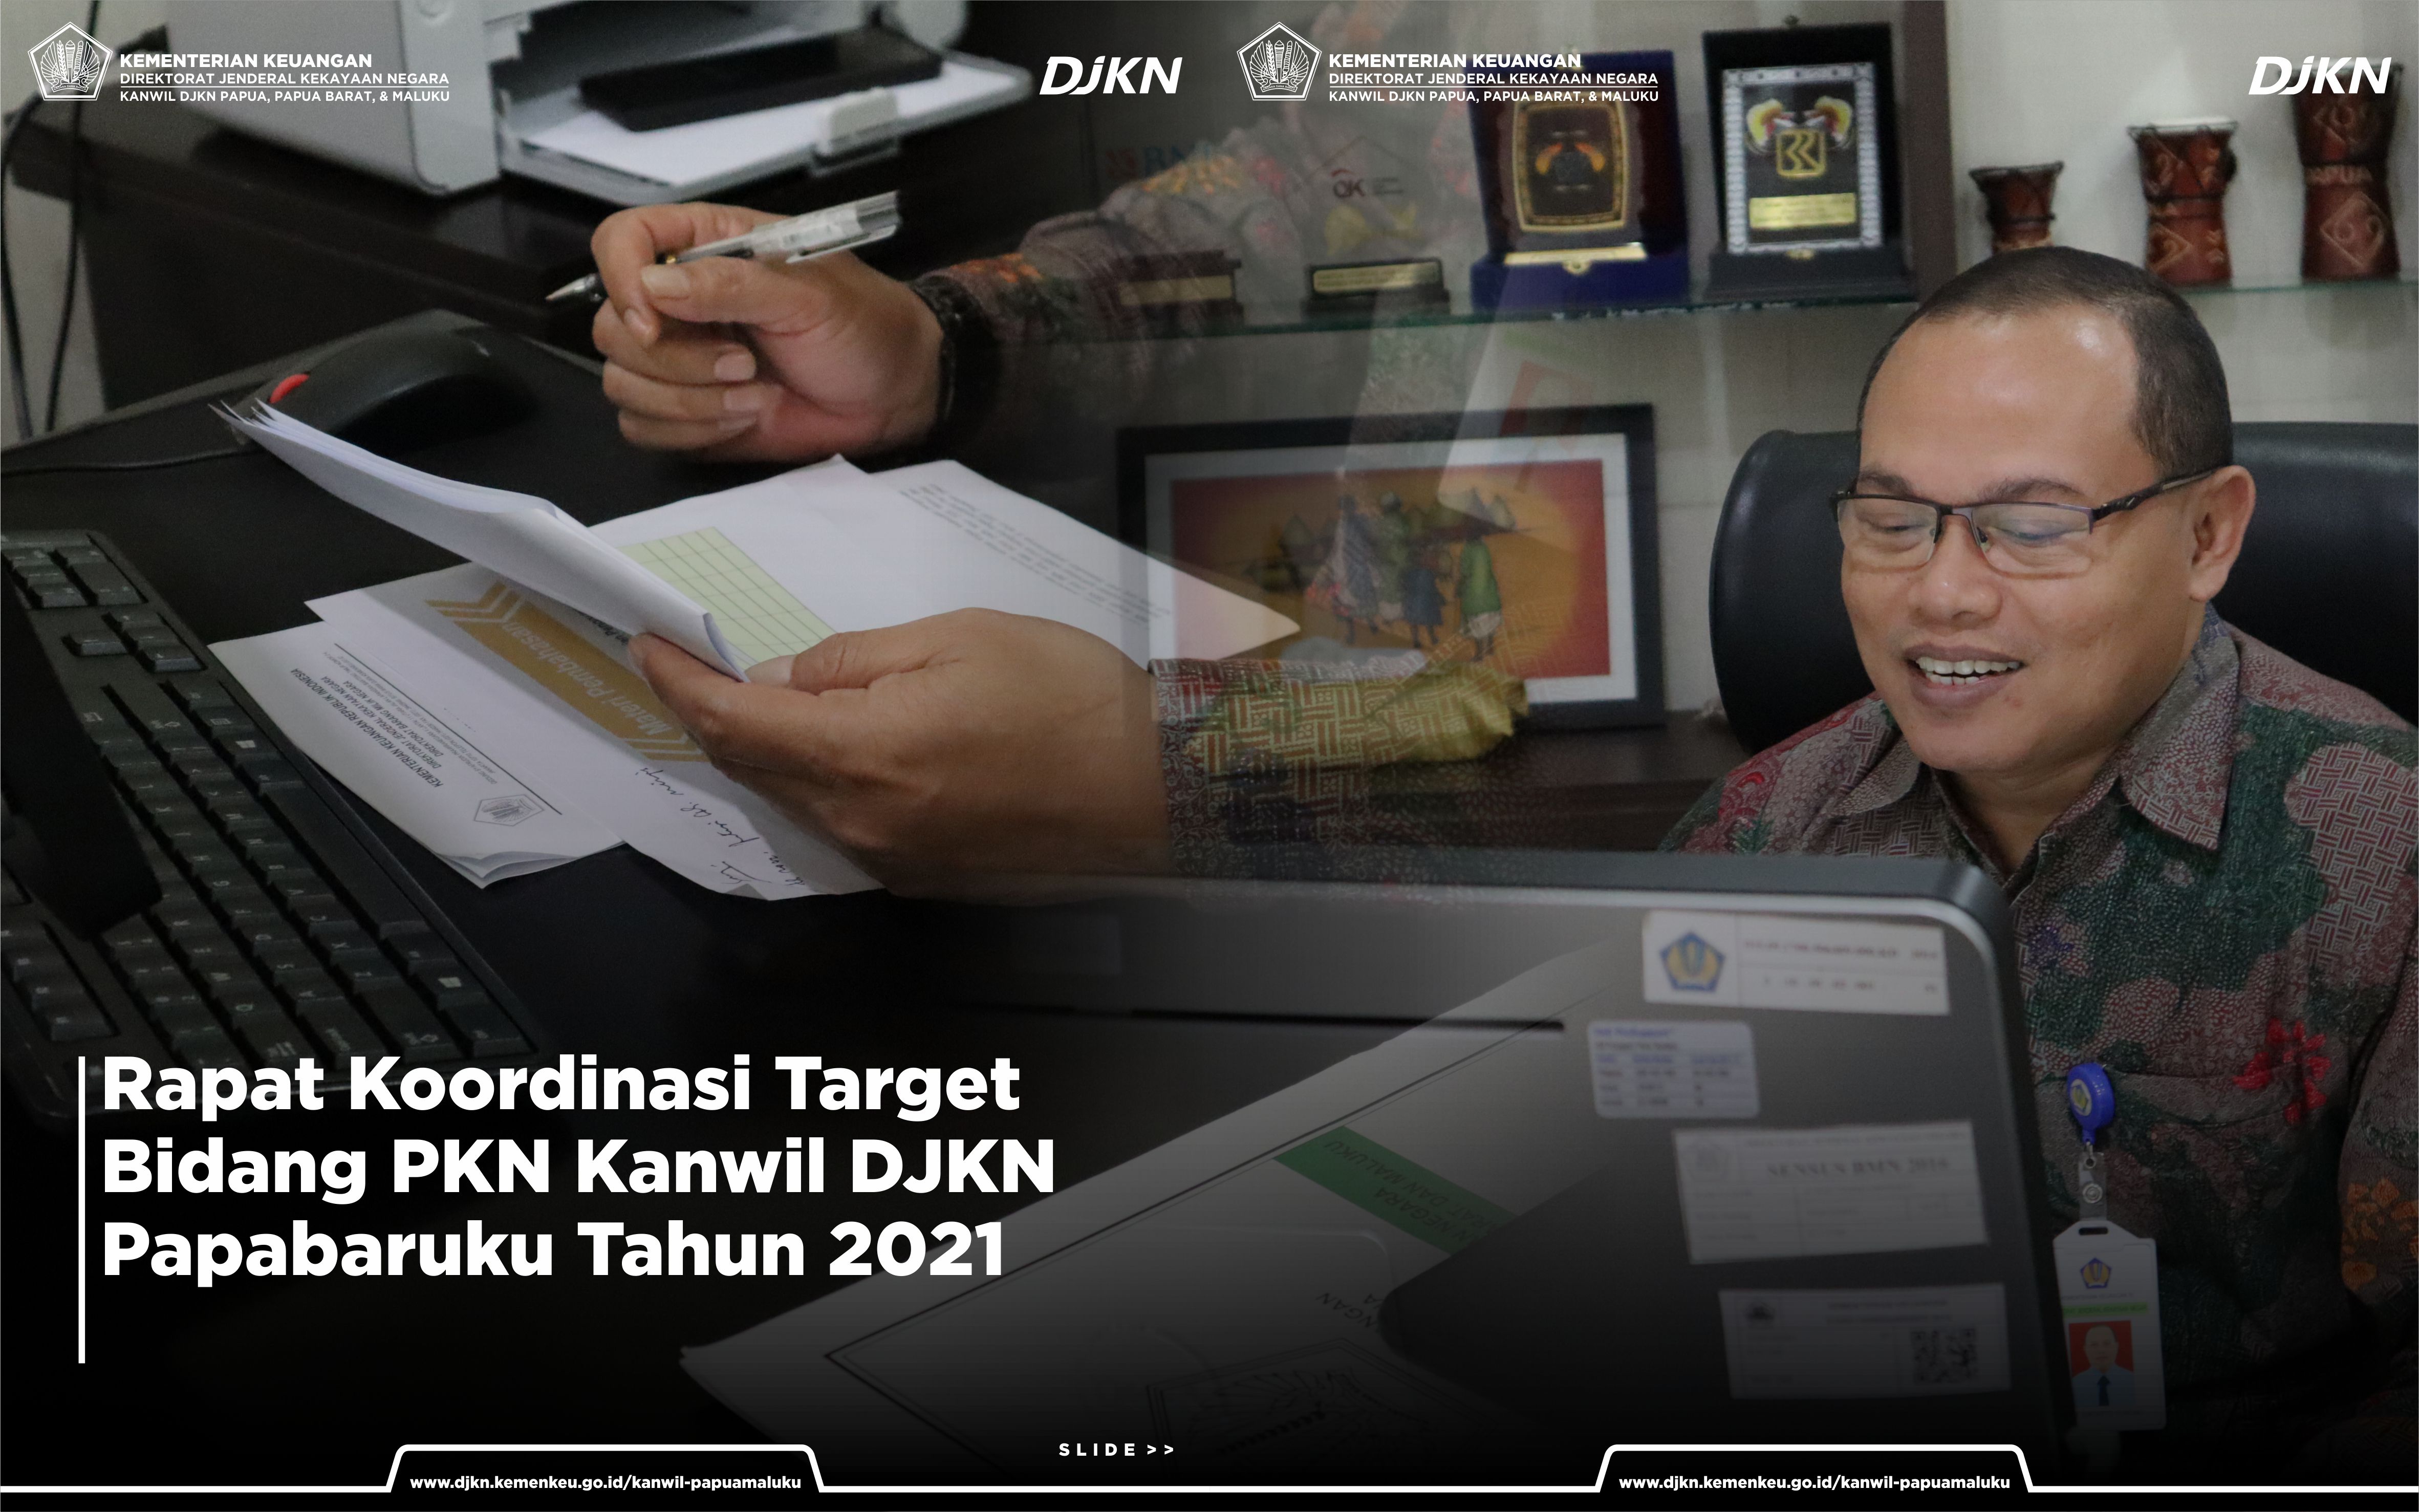 Rapat Koordinasi Target Bidang PKN Kanwil DJKN Papabaruku Tahun 2021